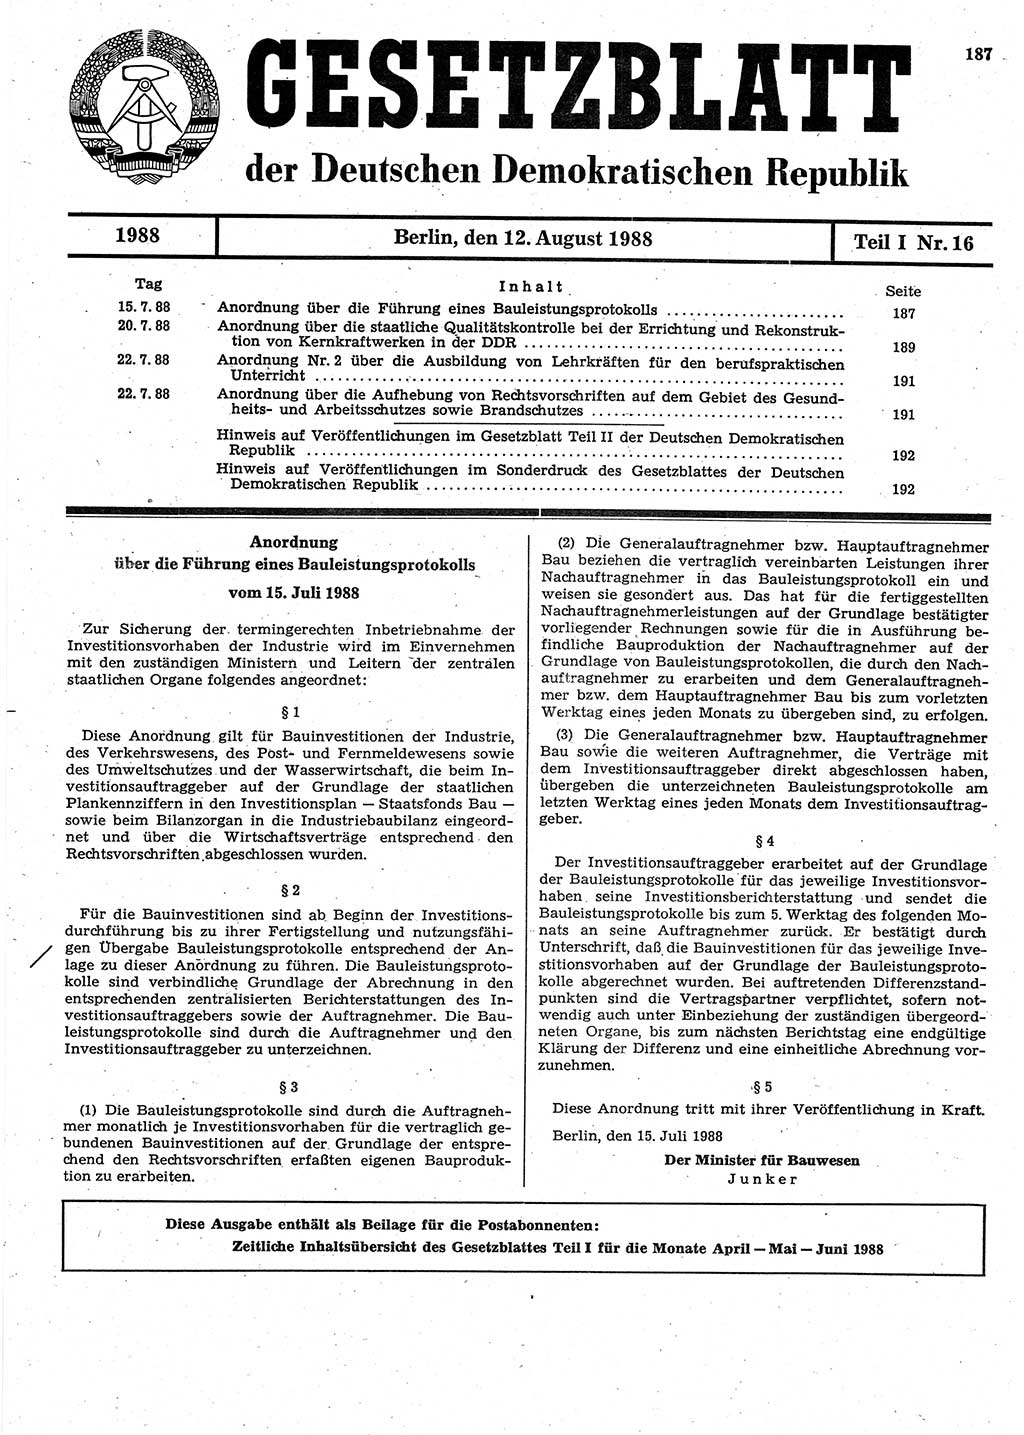 Gesetzblatt (GBl.) der Deutschen Demokratischen Republik (DDR) Teil Ⅰ 1988, Seite 187 (GBl. DDR Ⅰ 1988, S. 187)